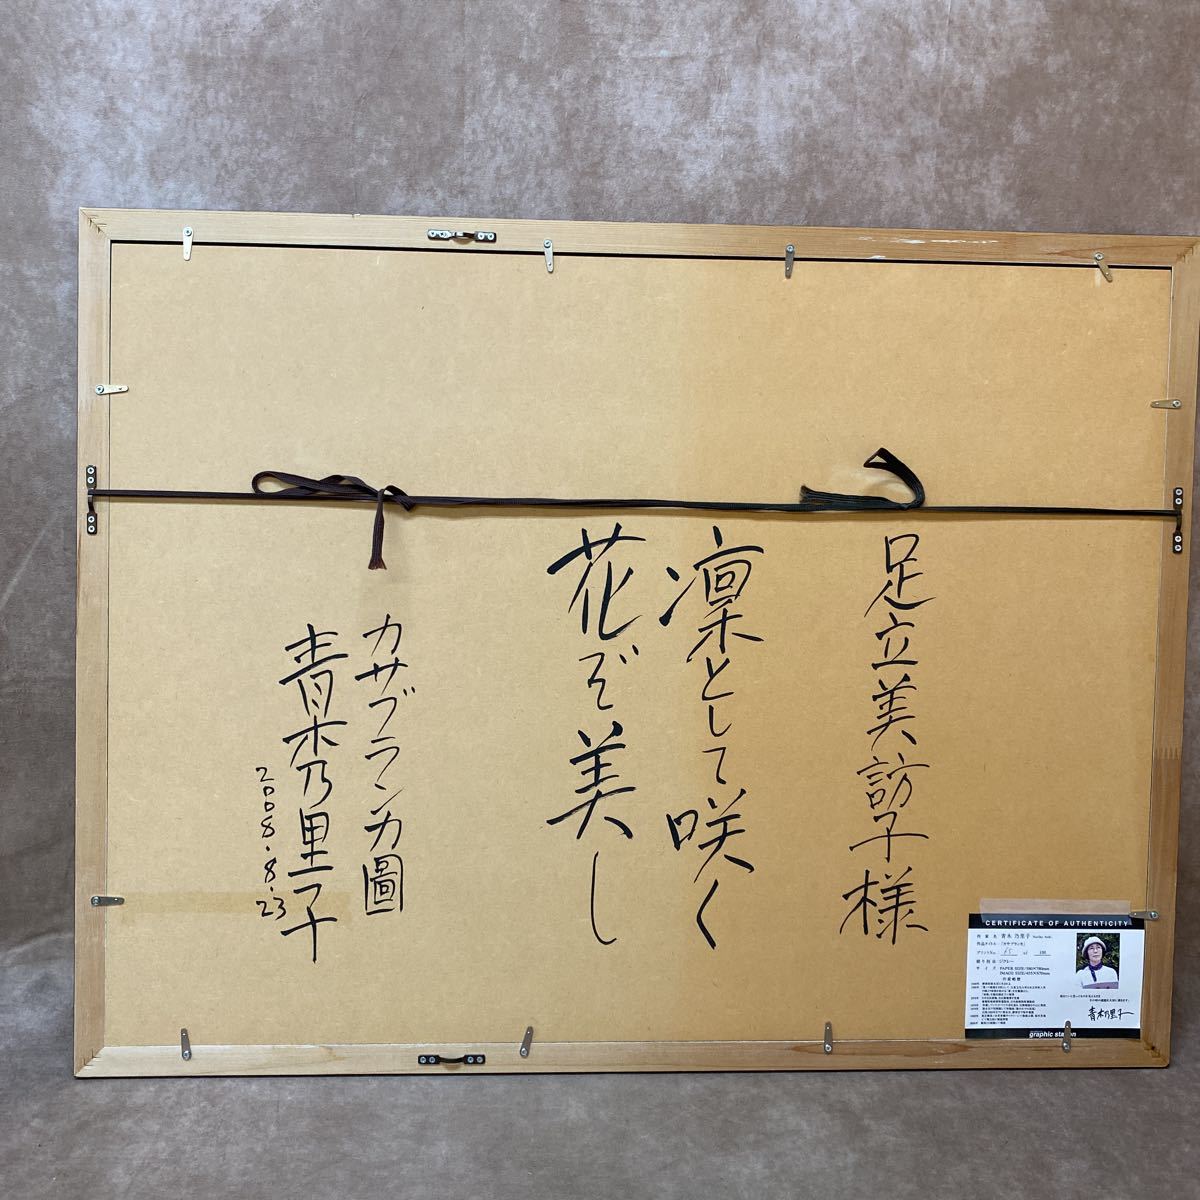 大きな 額縁 アルミ製 約65×85cm 青木乃里子 カサブランカ ジクレー 65